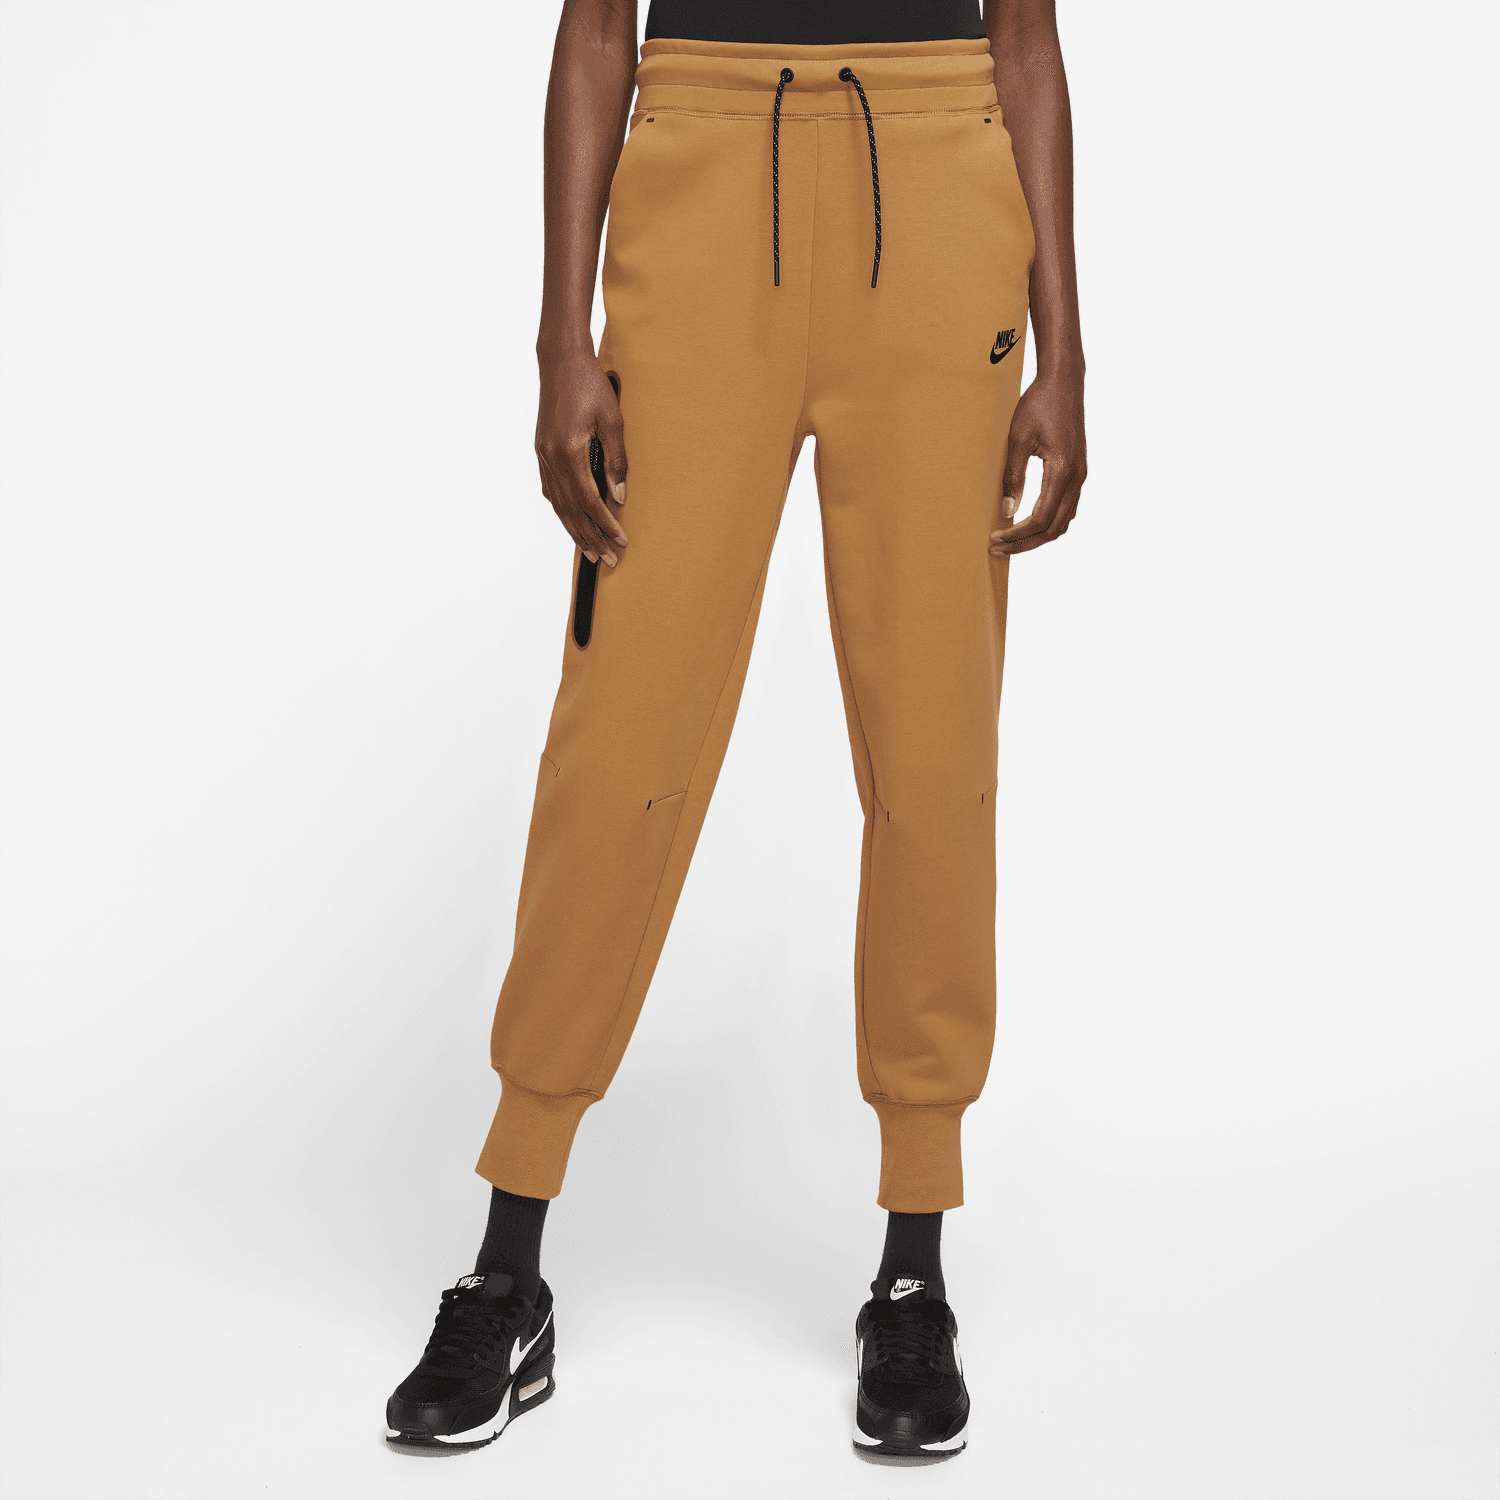 NIKE Sportswear Tech Fleece Pants CW4292